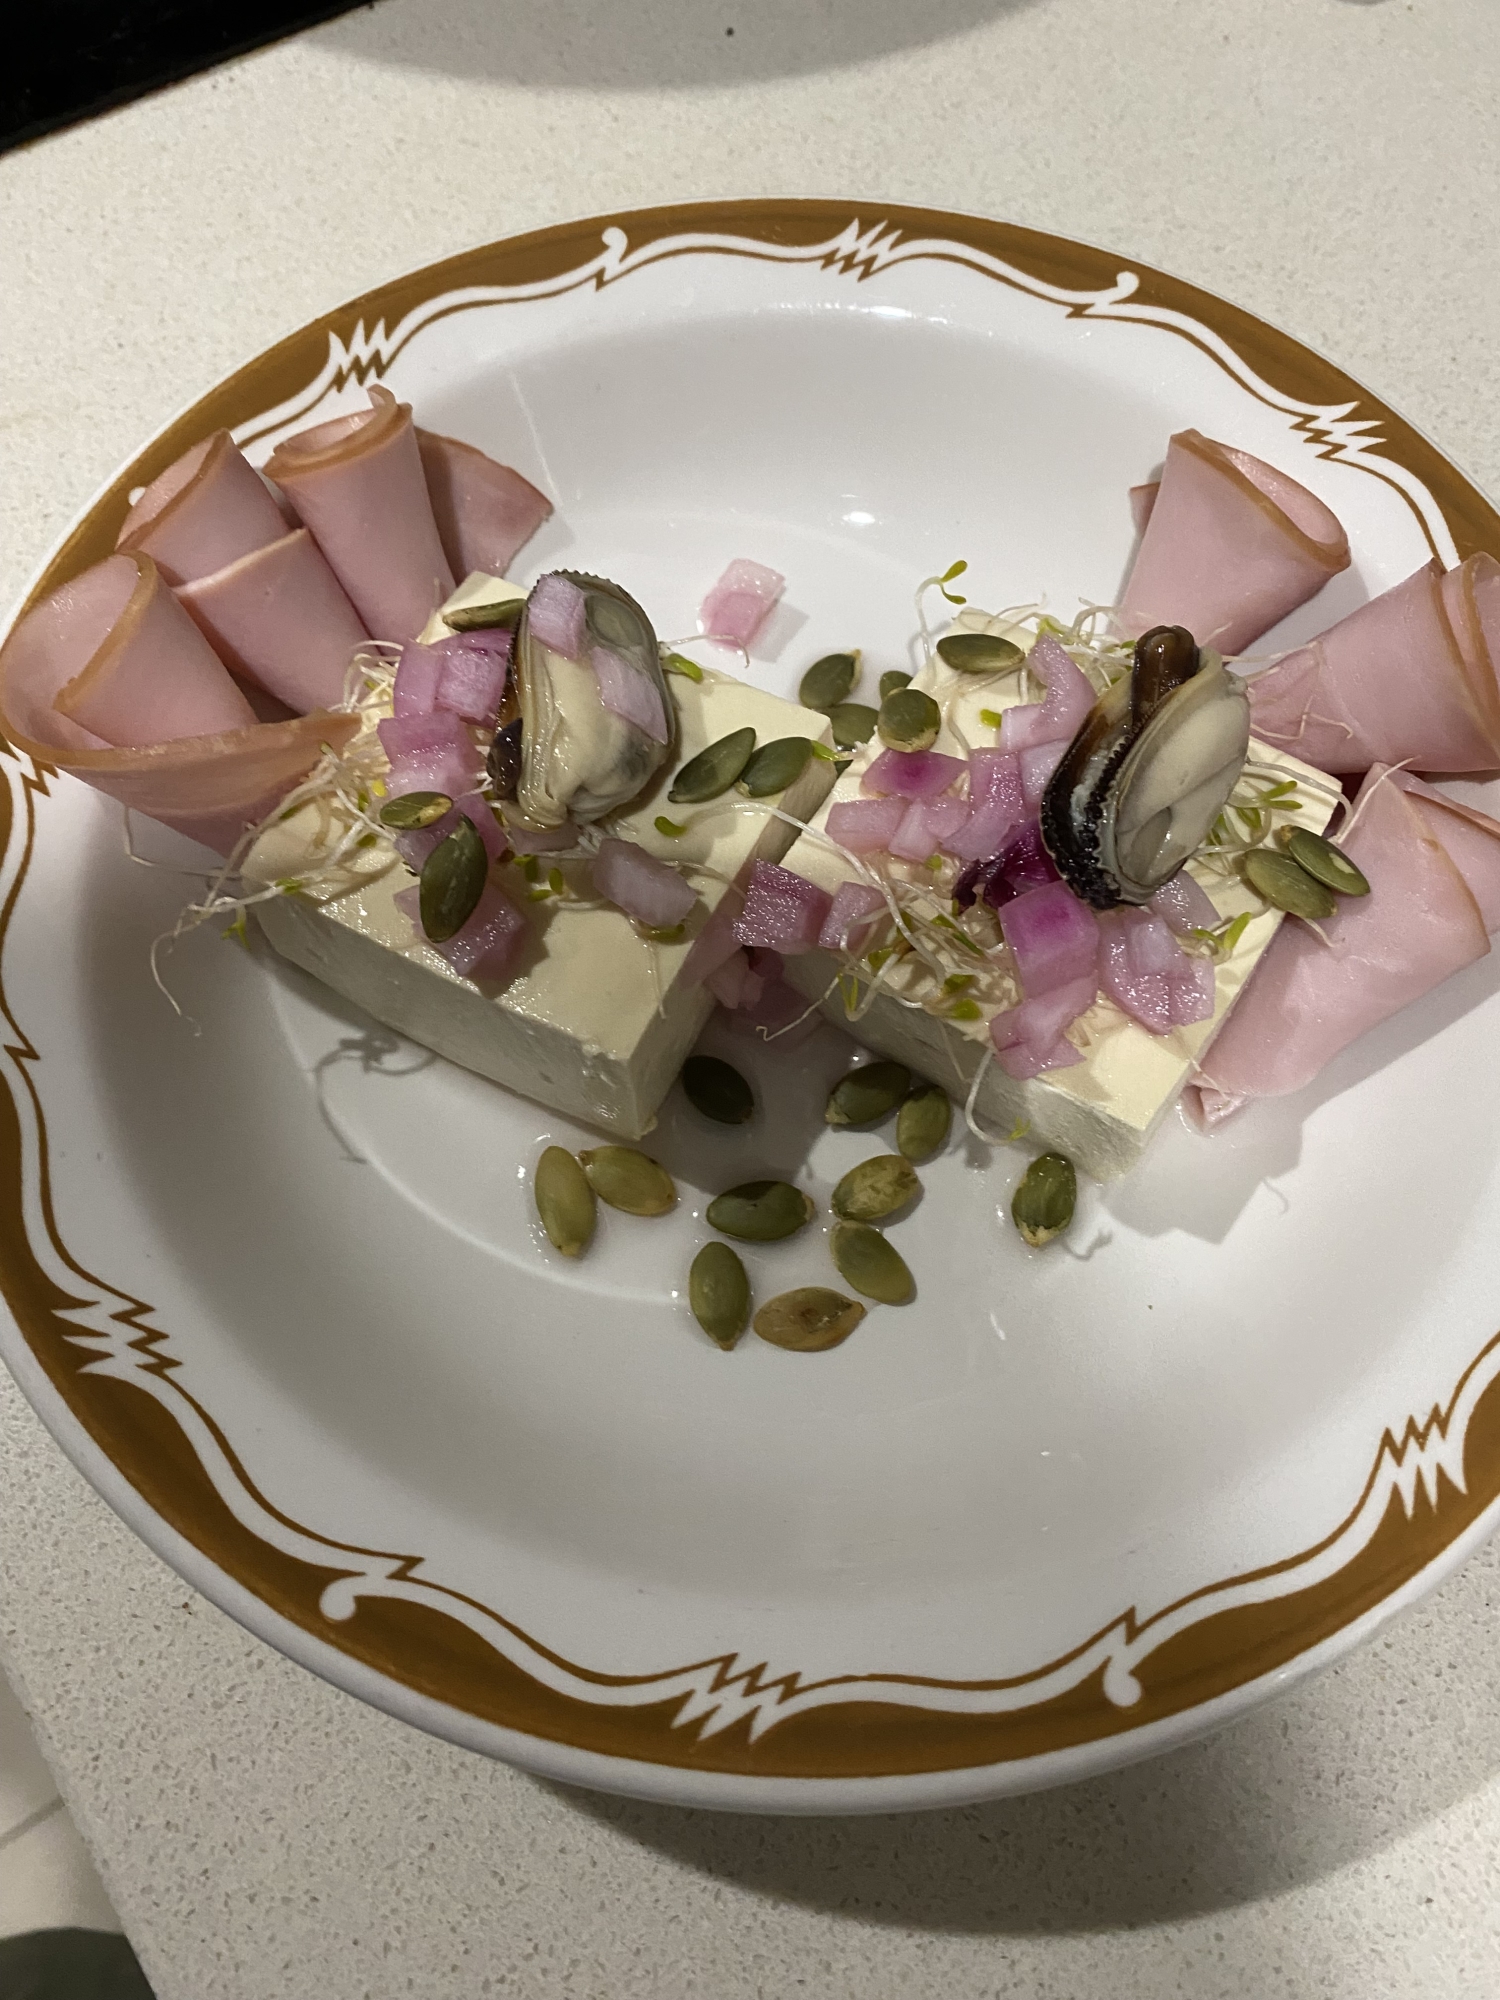 デコレーション豆腐サラダ